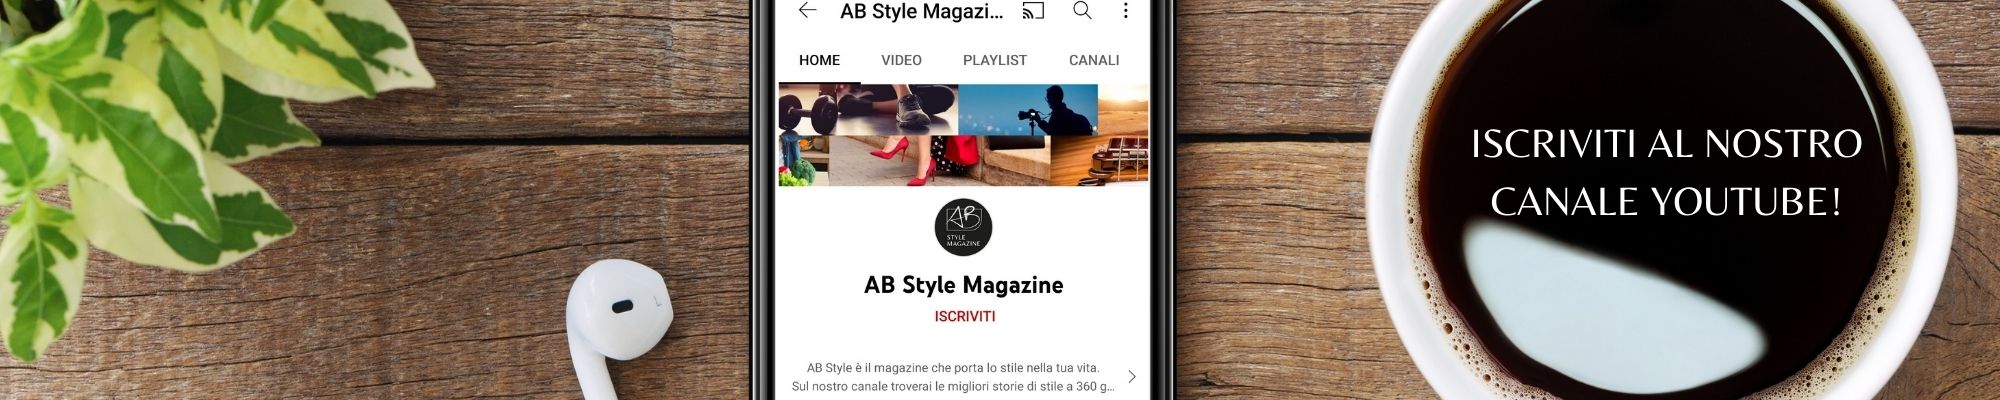 YouTube AB Style Magazine